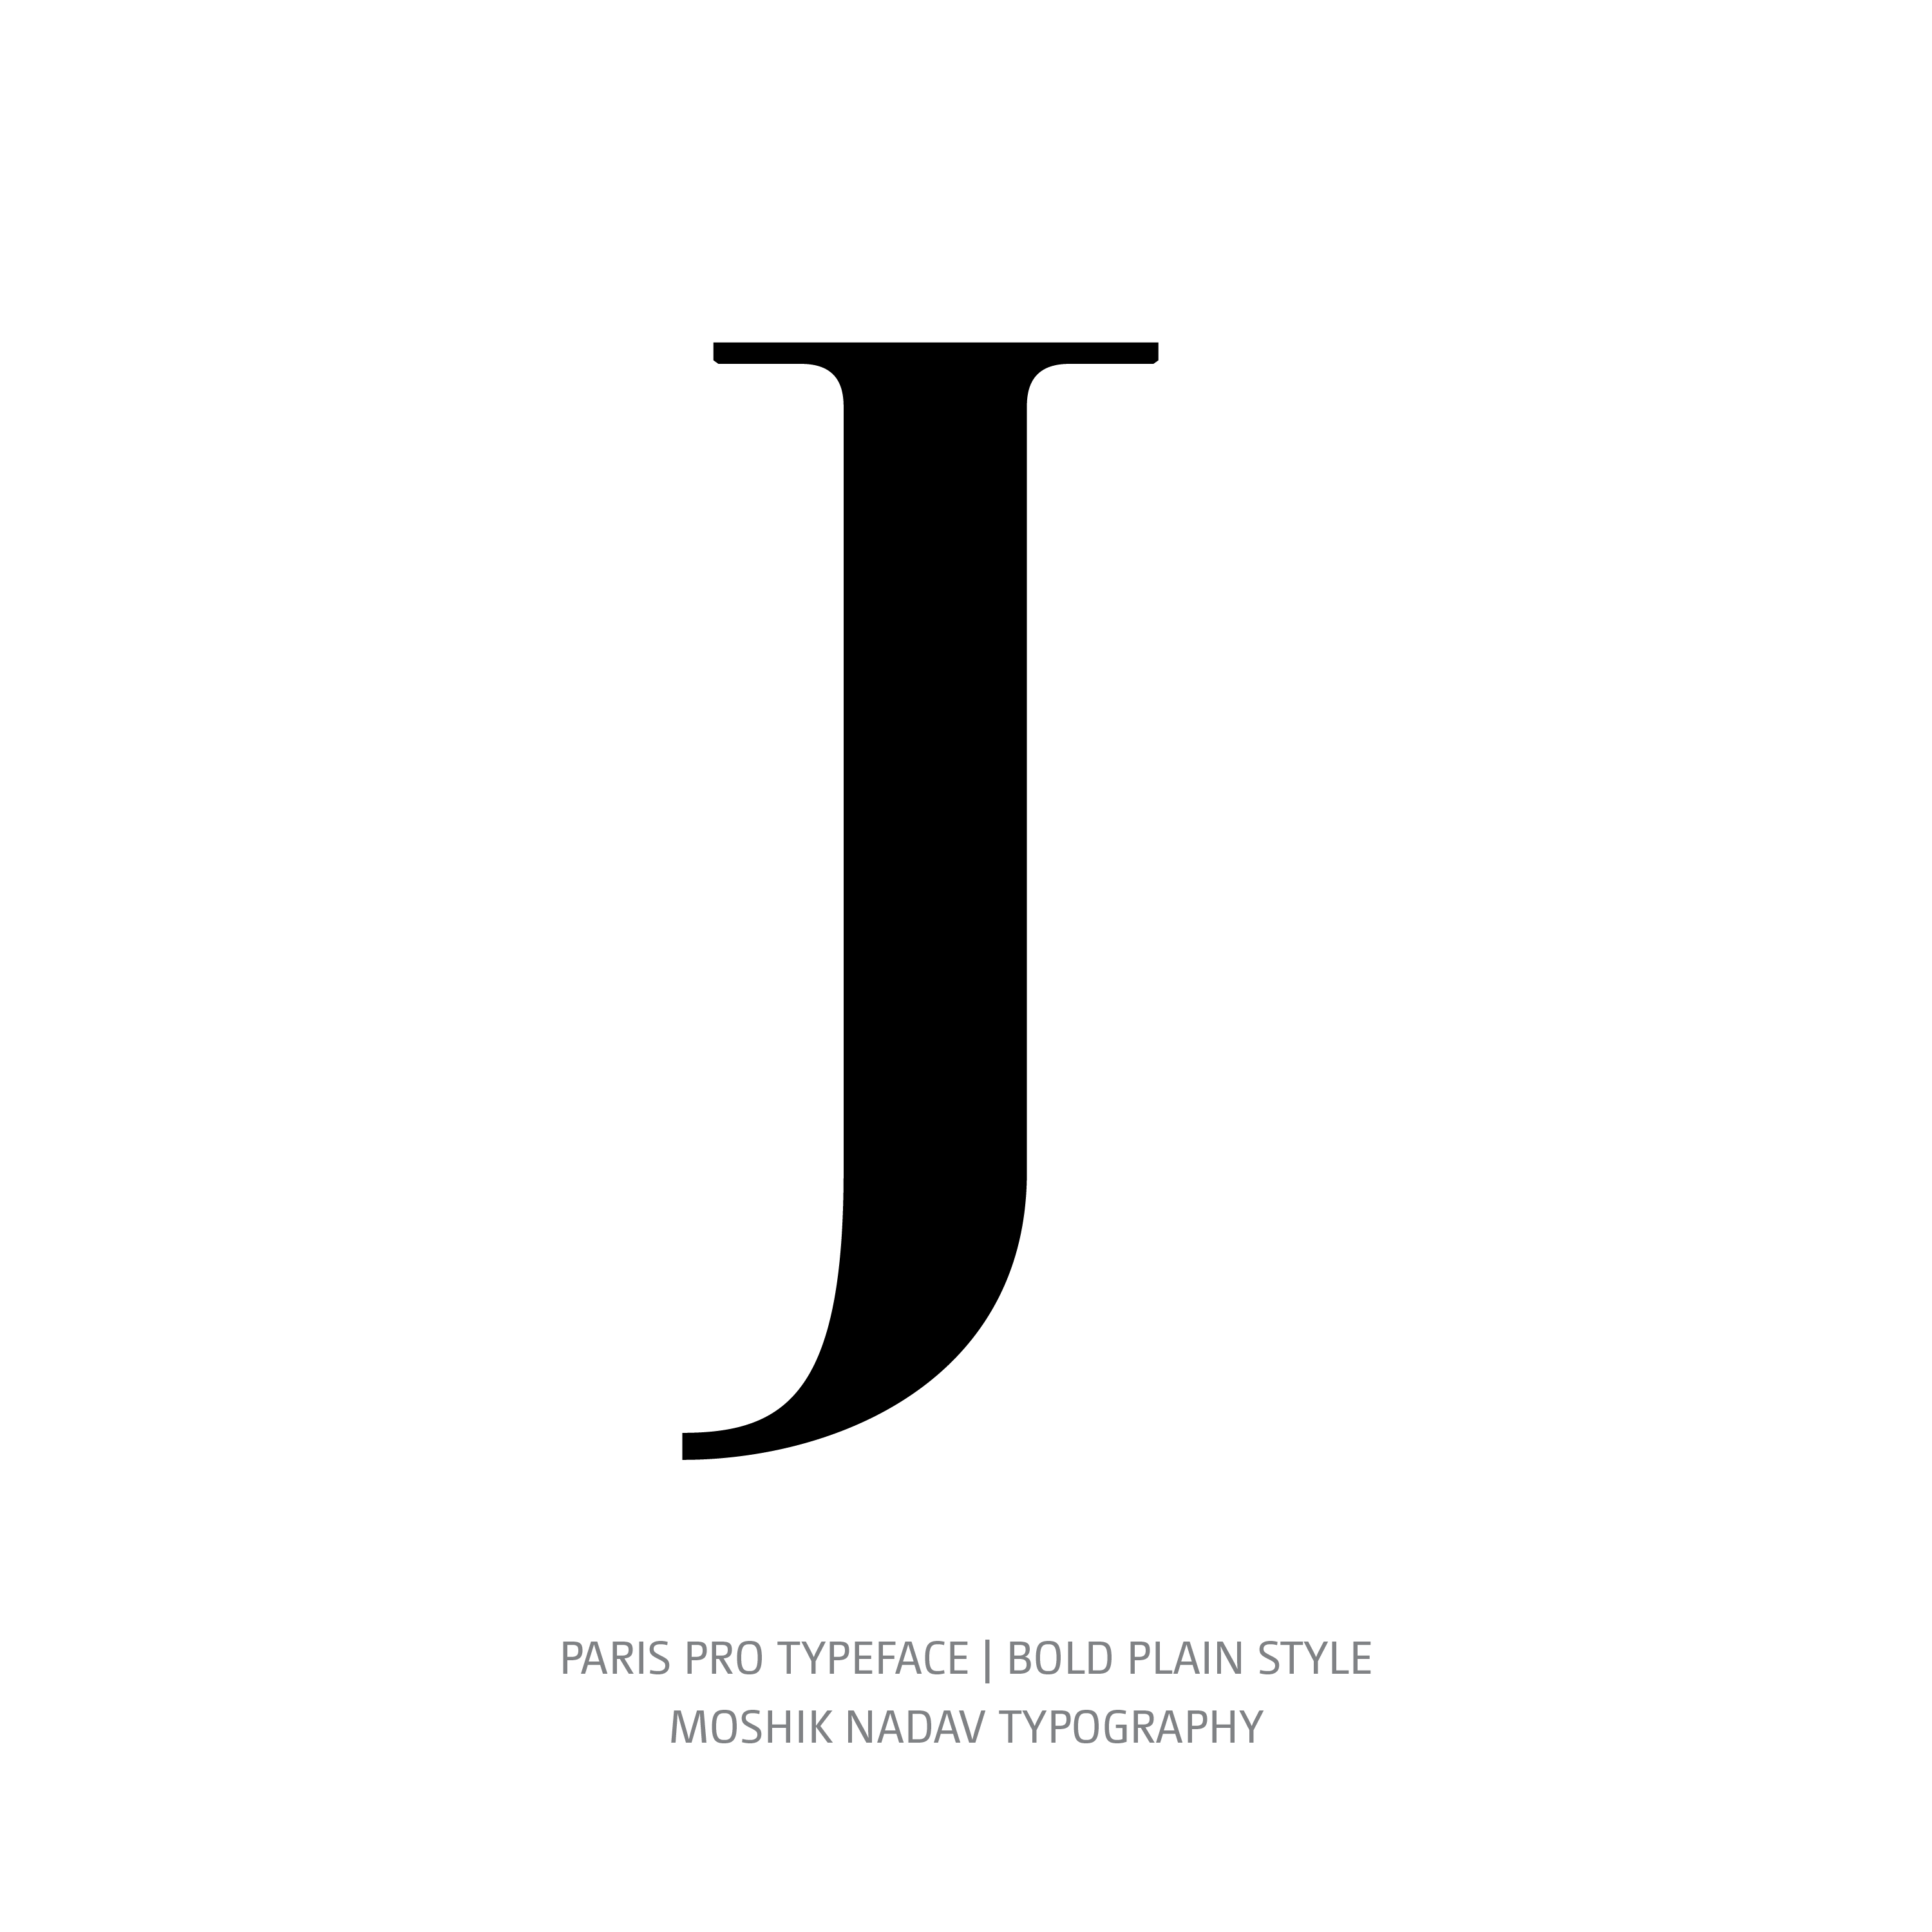 Paris Pro Typeface Bold Plain J